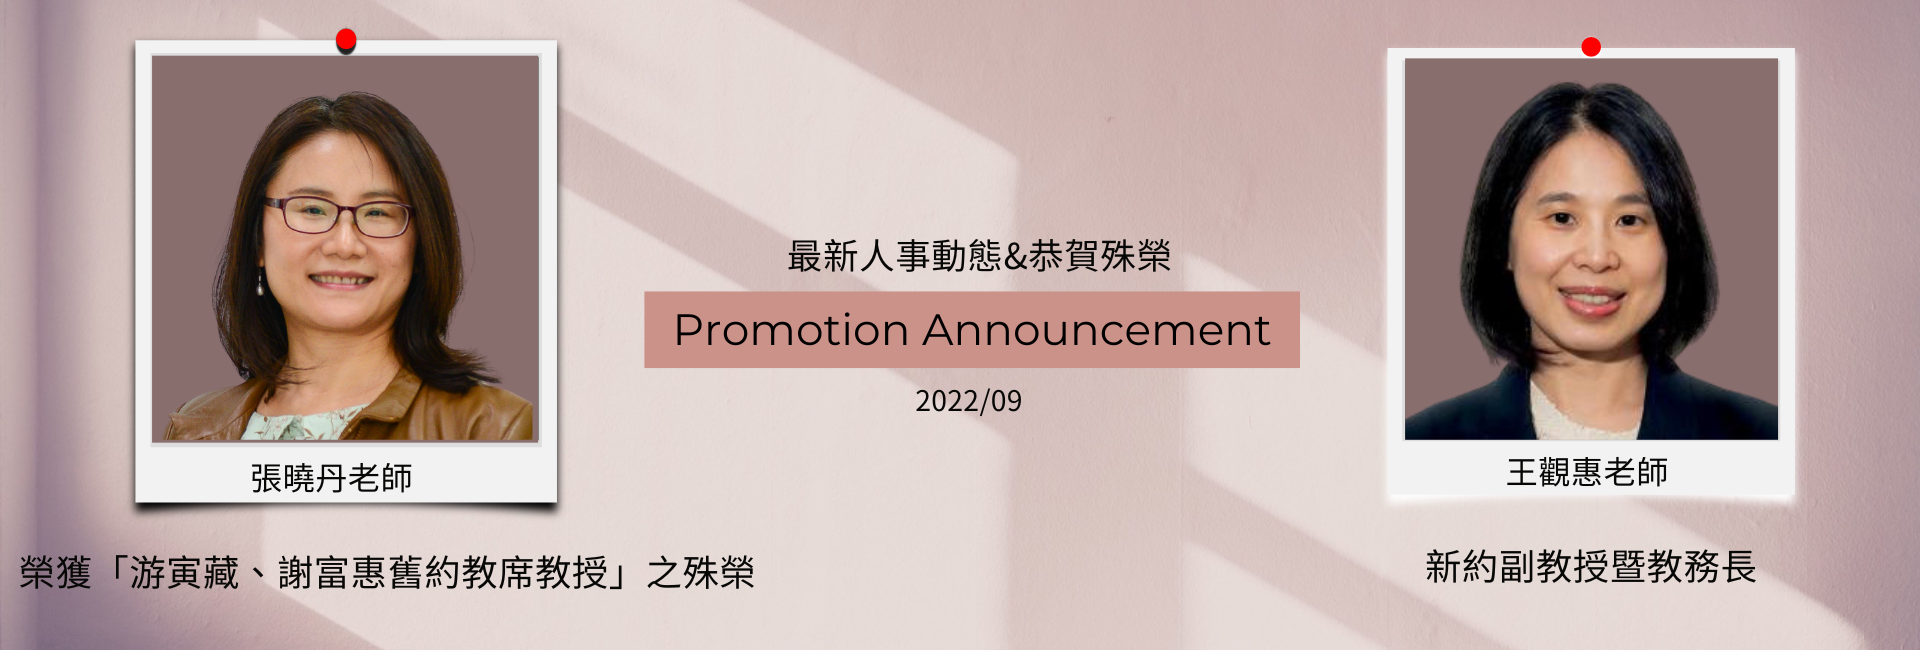 Promotion Announcement